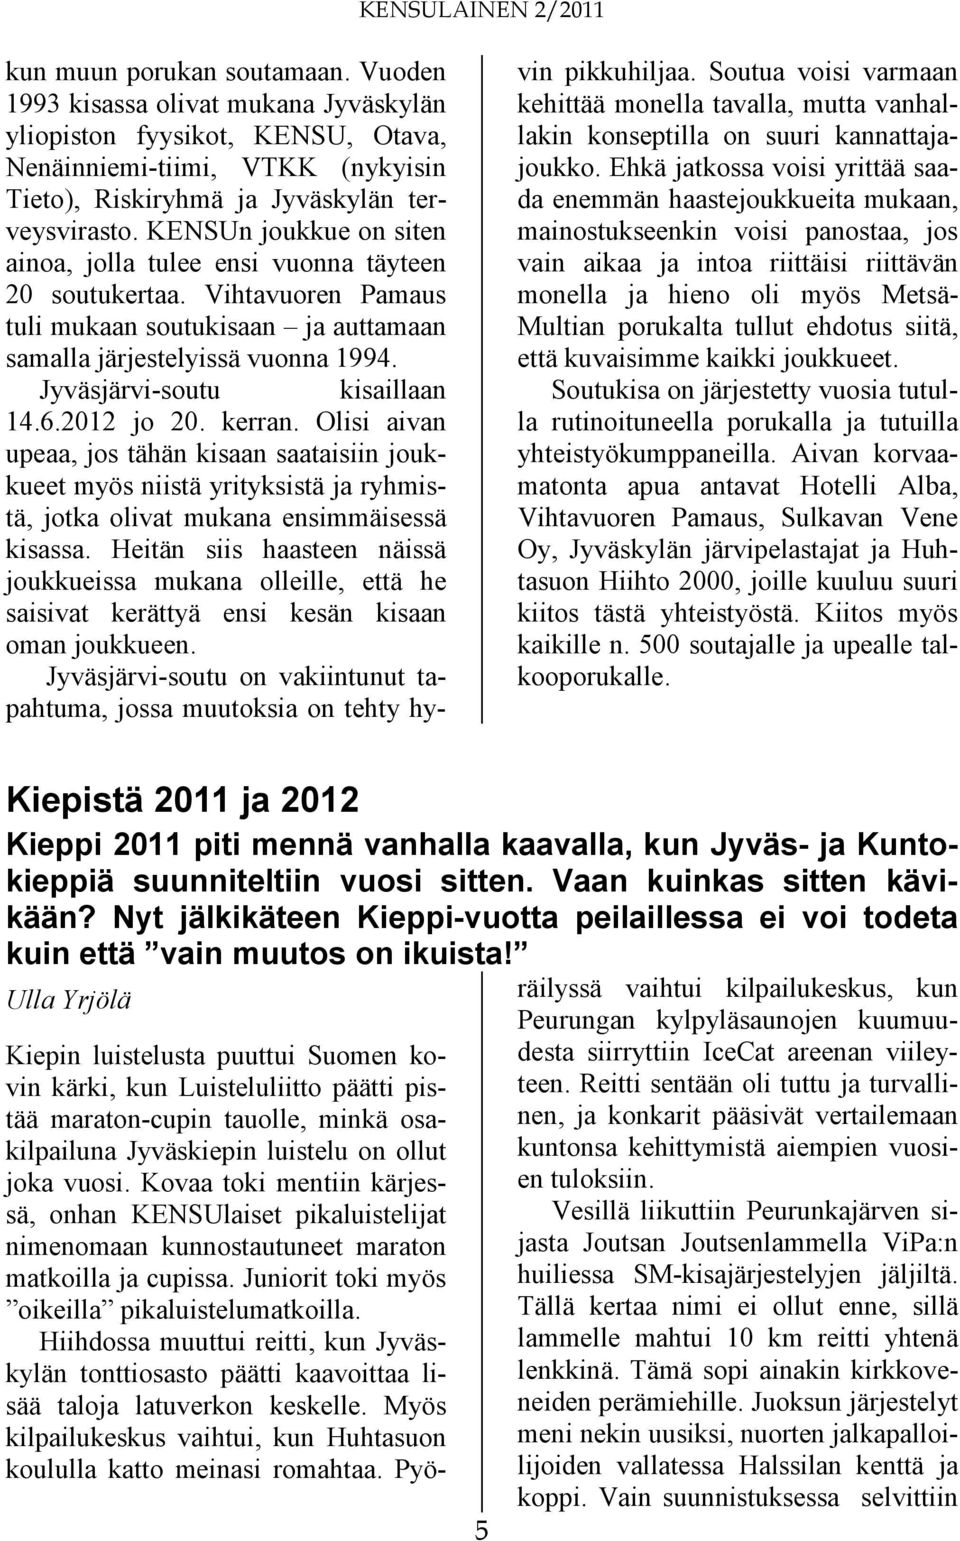 Jyväsjärvi-soutu kisaillaan 14.6.2012 jo 20. kerran. Olisi aivan upeaa, jos tähän kisaan saataisiin joukkueet myös niistä yrityksistä ja ryhmistä, jotka olivat mukana ensimmäisessä kisassa.